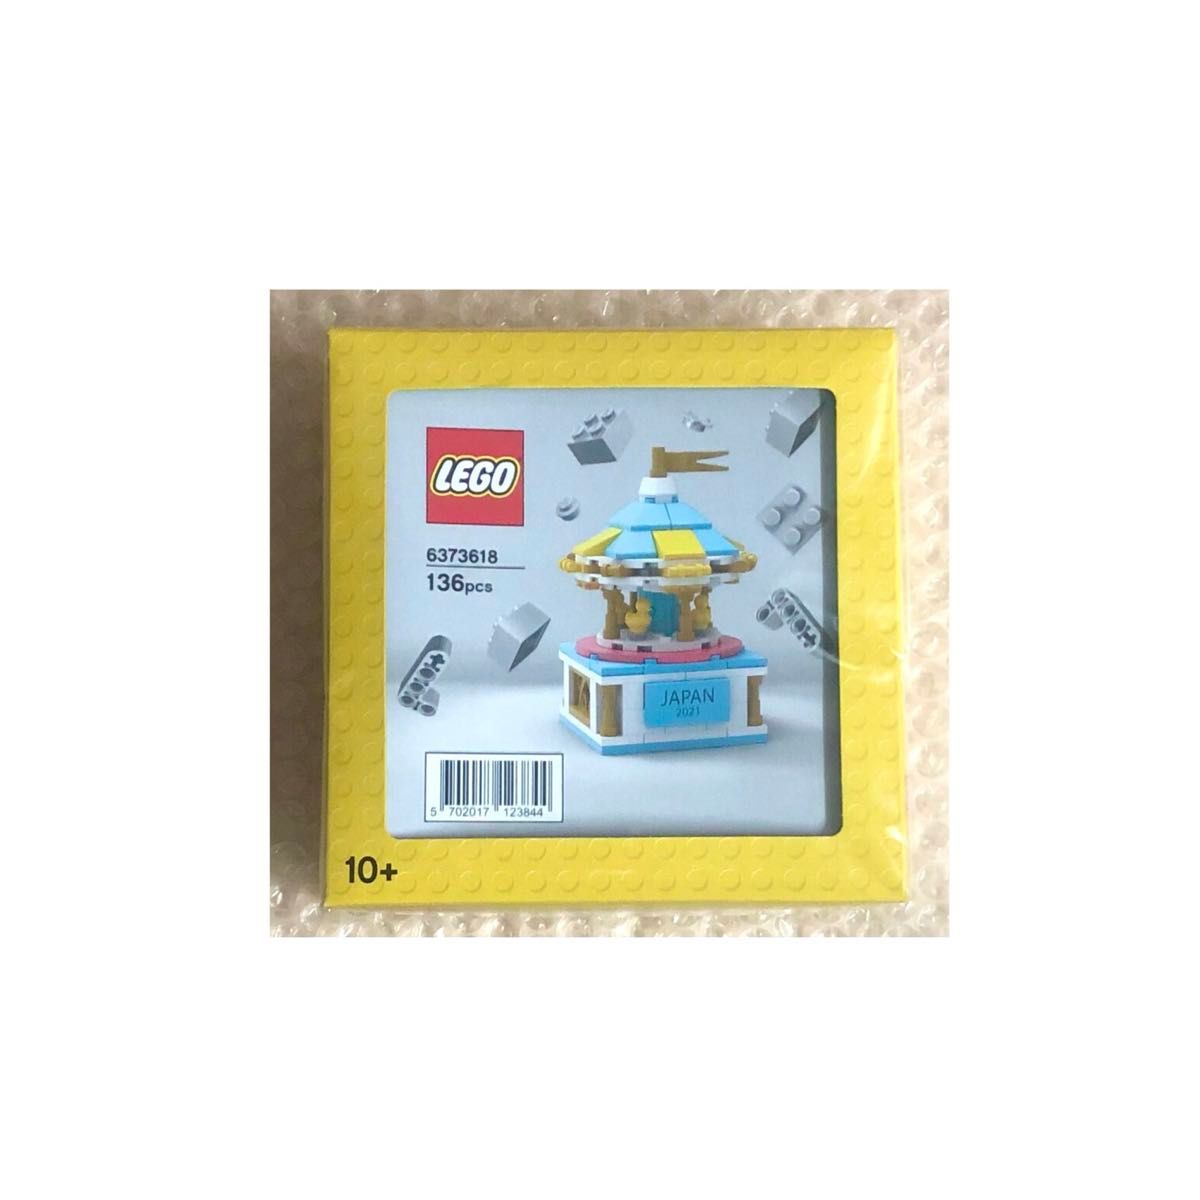 レゴ(LEGO) メリーゴーランド 6373618